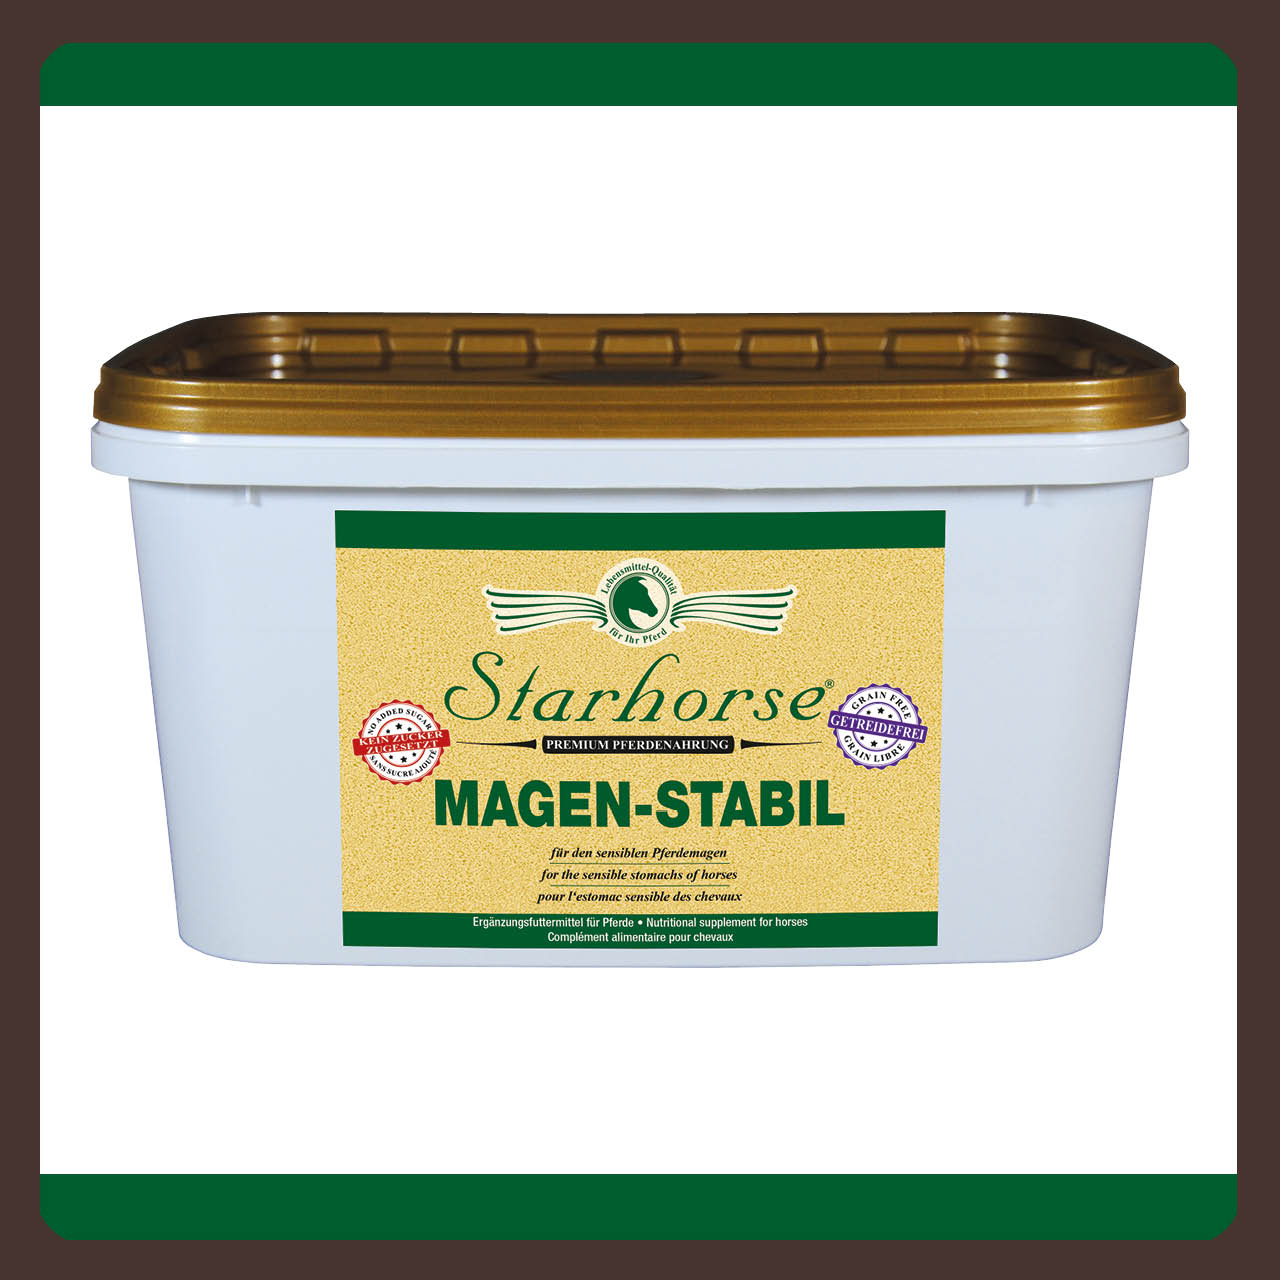 Starhorse Magen-Stabil